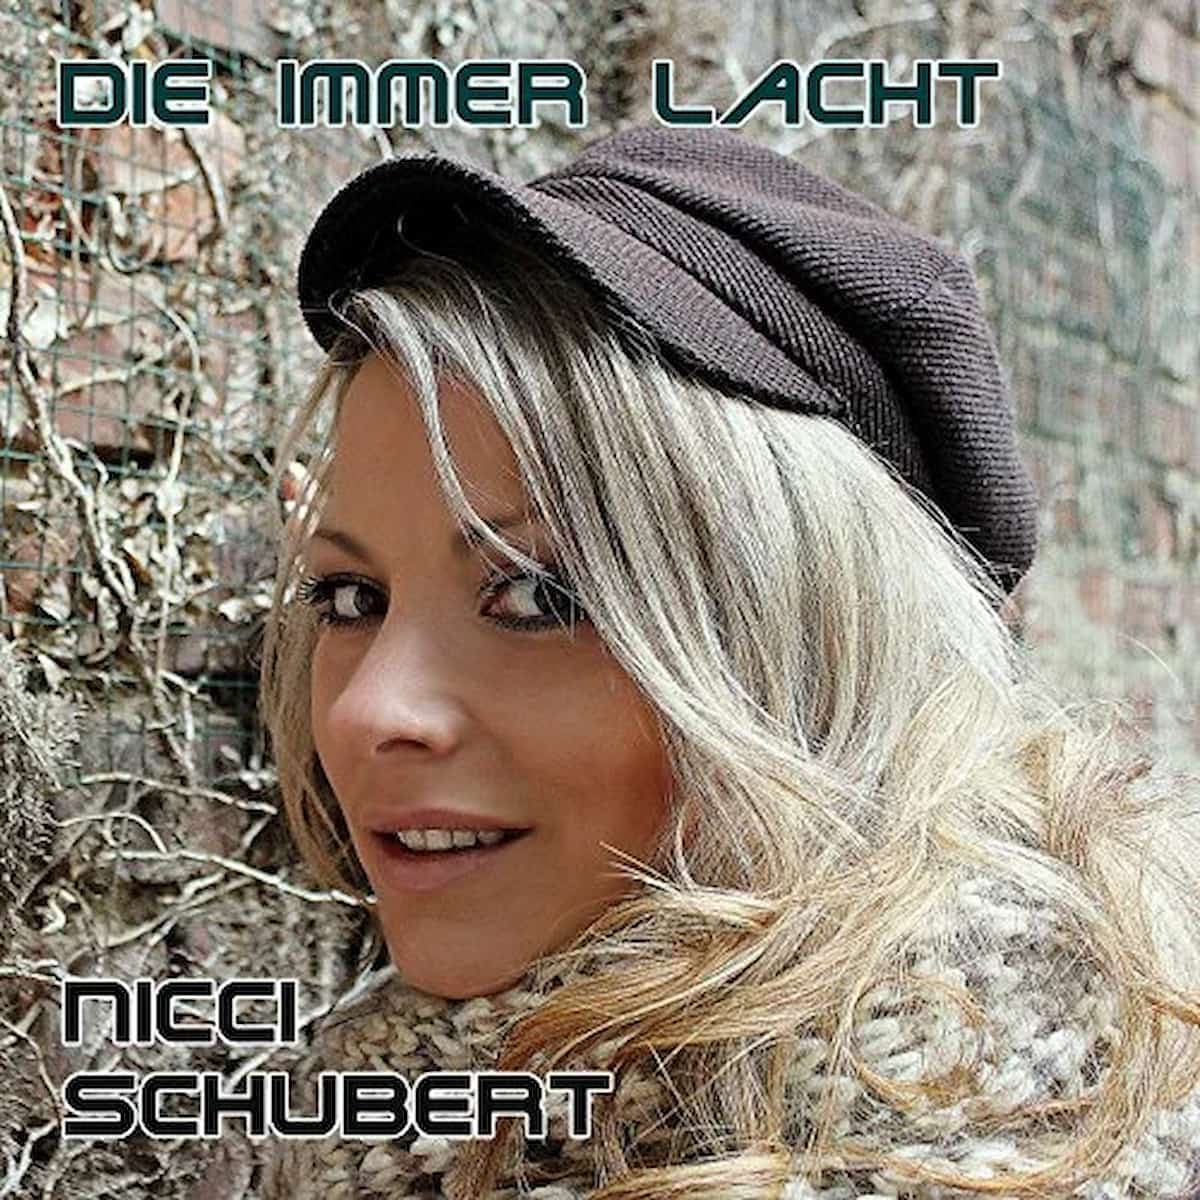 Nicci Schubert - Die immer lacht (Single-Cover mit Nicci Schubert)